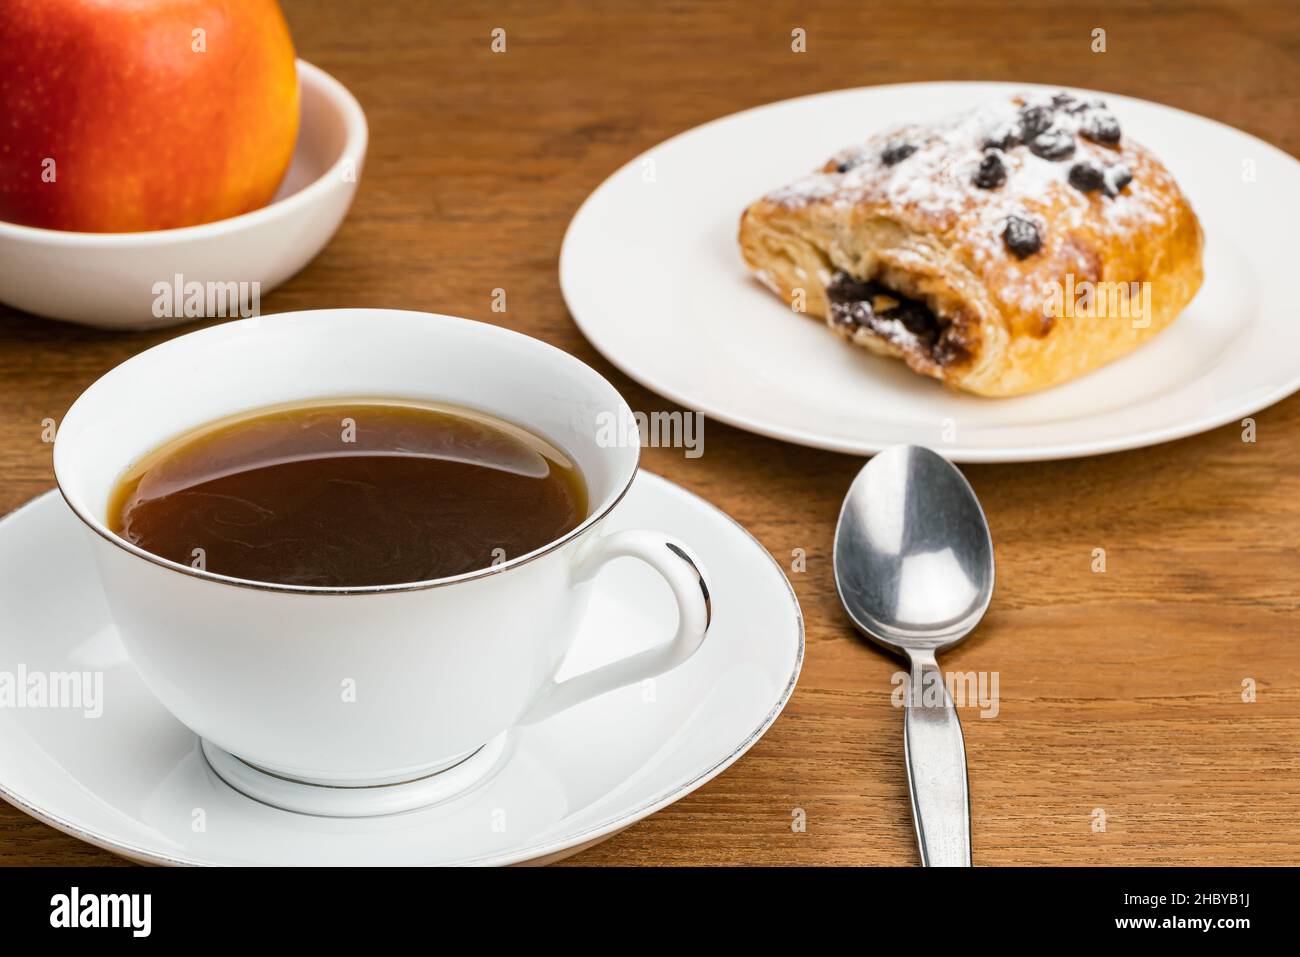 Heißer schwarzer Kaffee in weißer Keramik-Tasse auf Keramik-Untertasse zum Frühstück mit dänischem Gebäck gefüllt mit Schokoladencreme Belag mit Schokoladenstückchen und Stockfoto